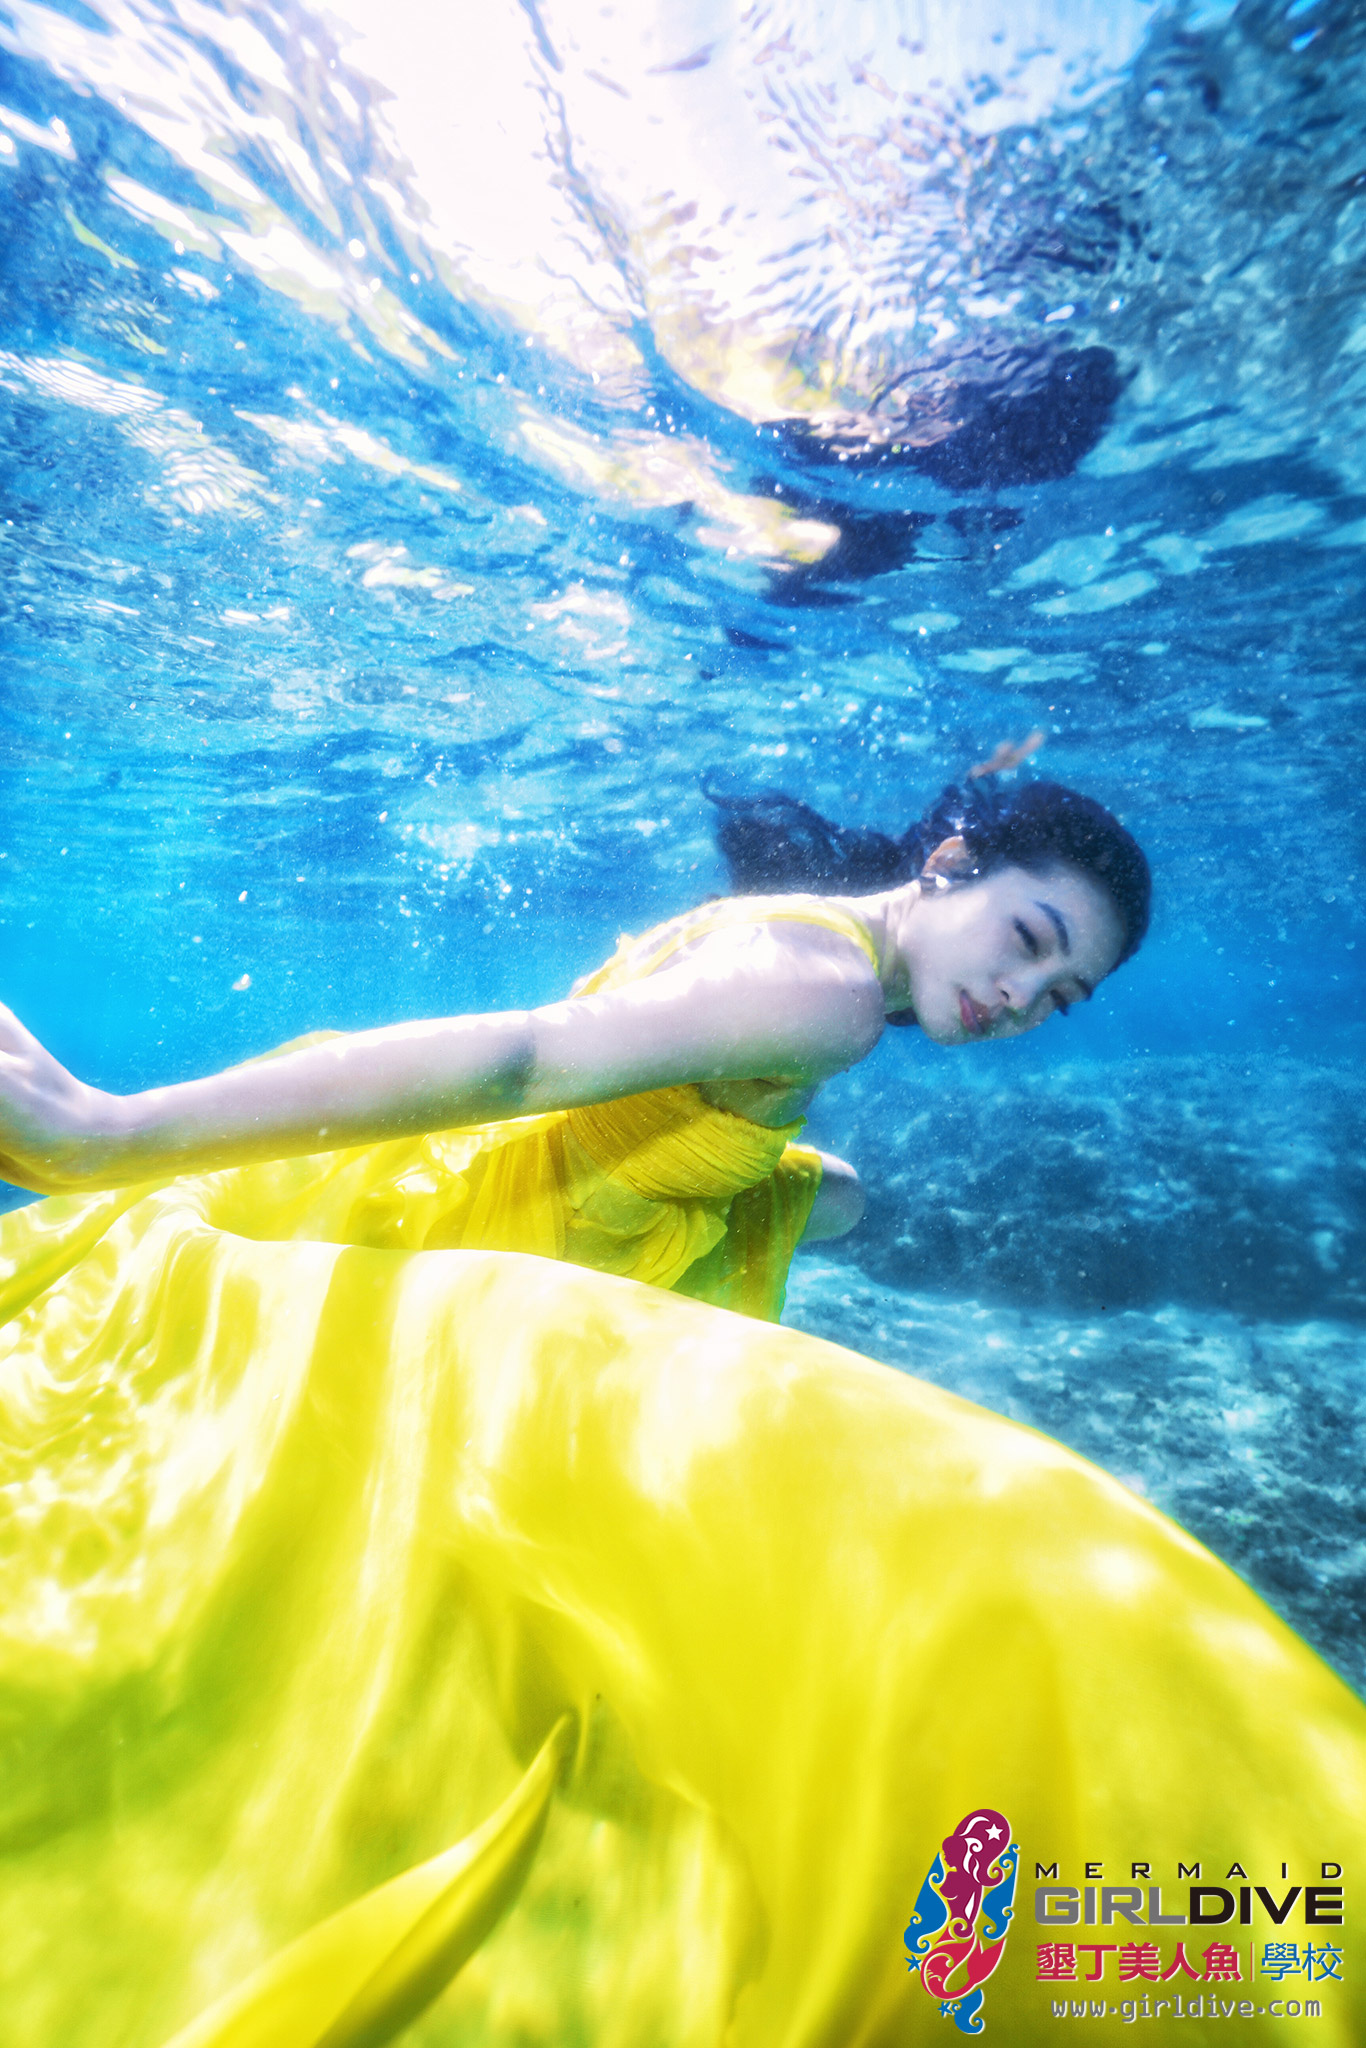 海人迷,自由潛水,水中攝影,水底婚紗,海外婚紗